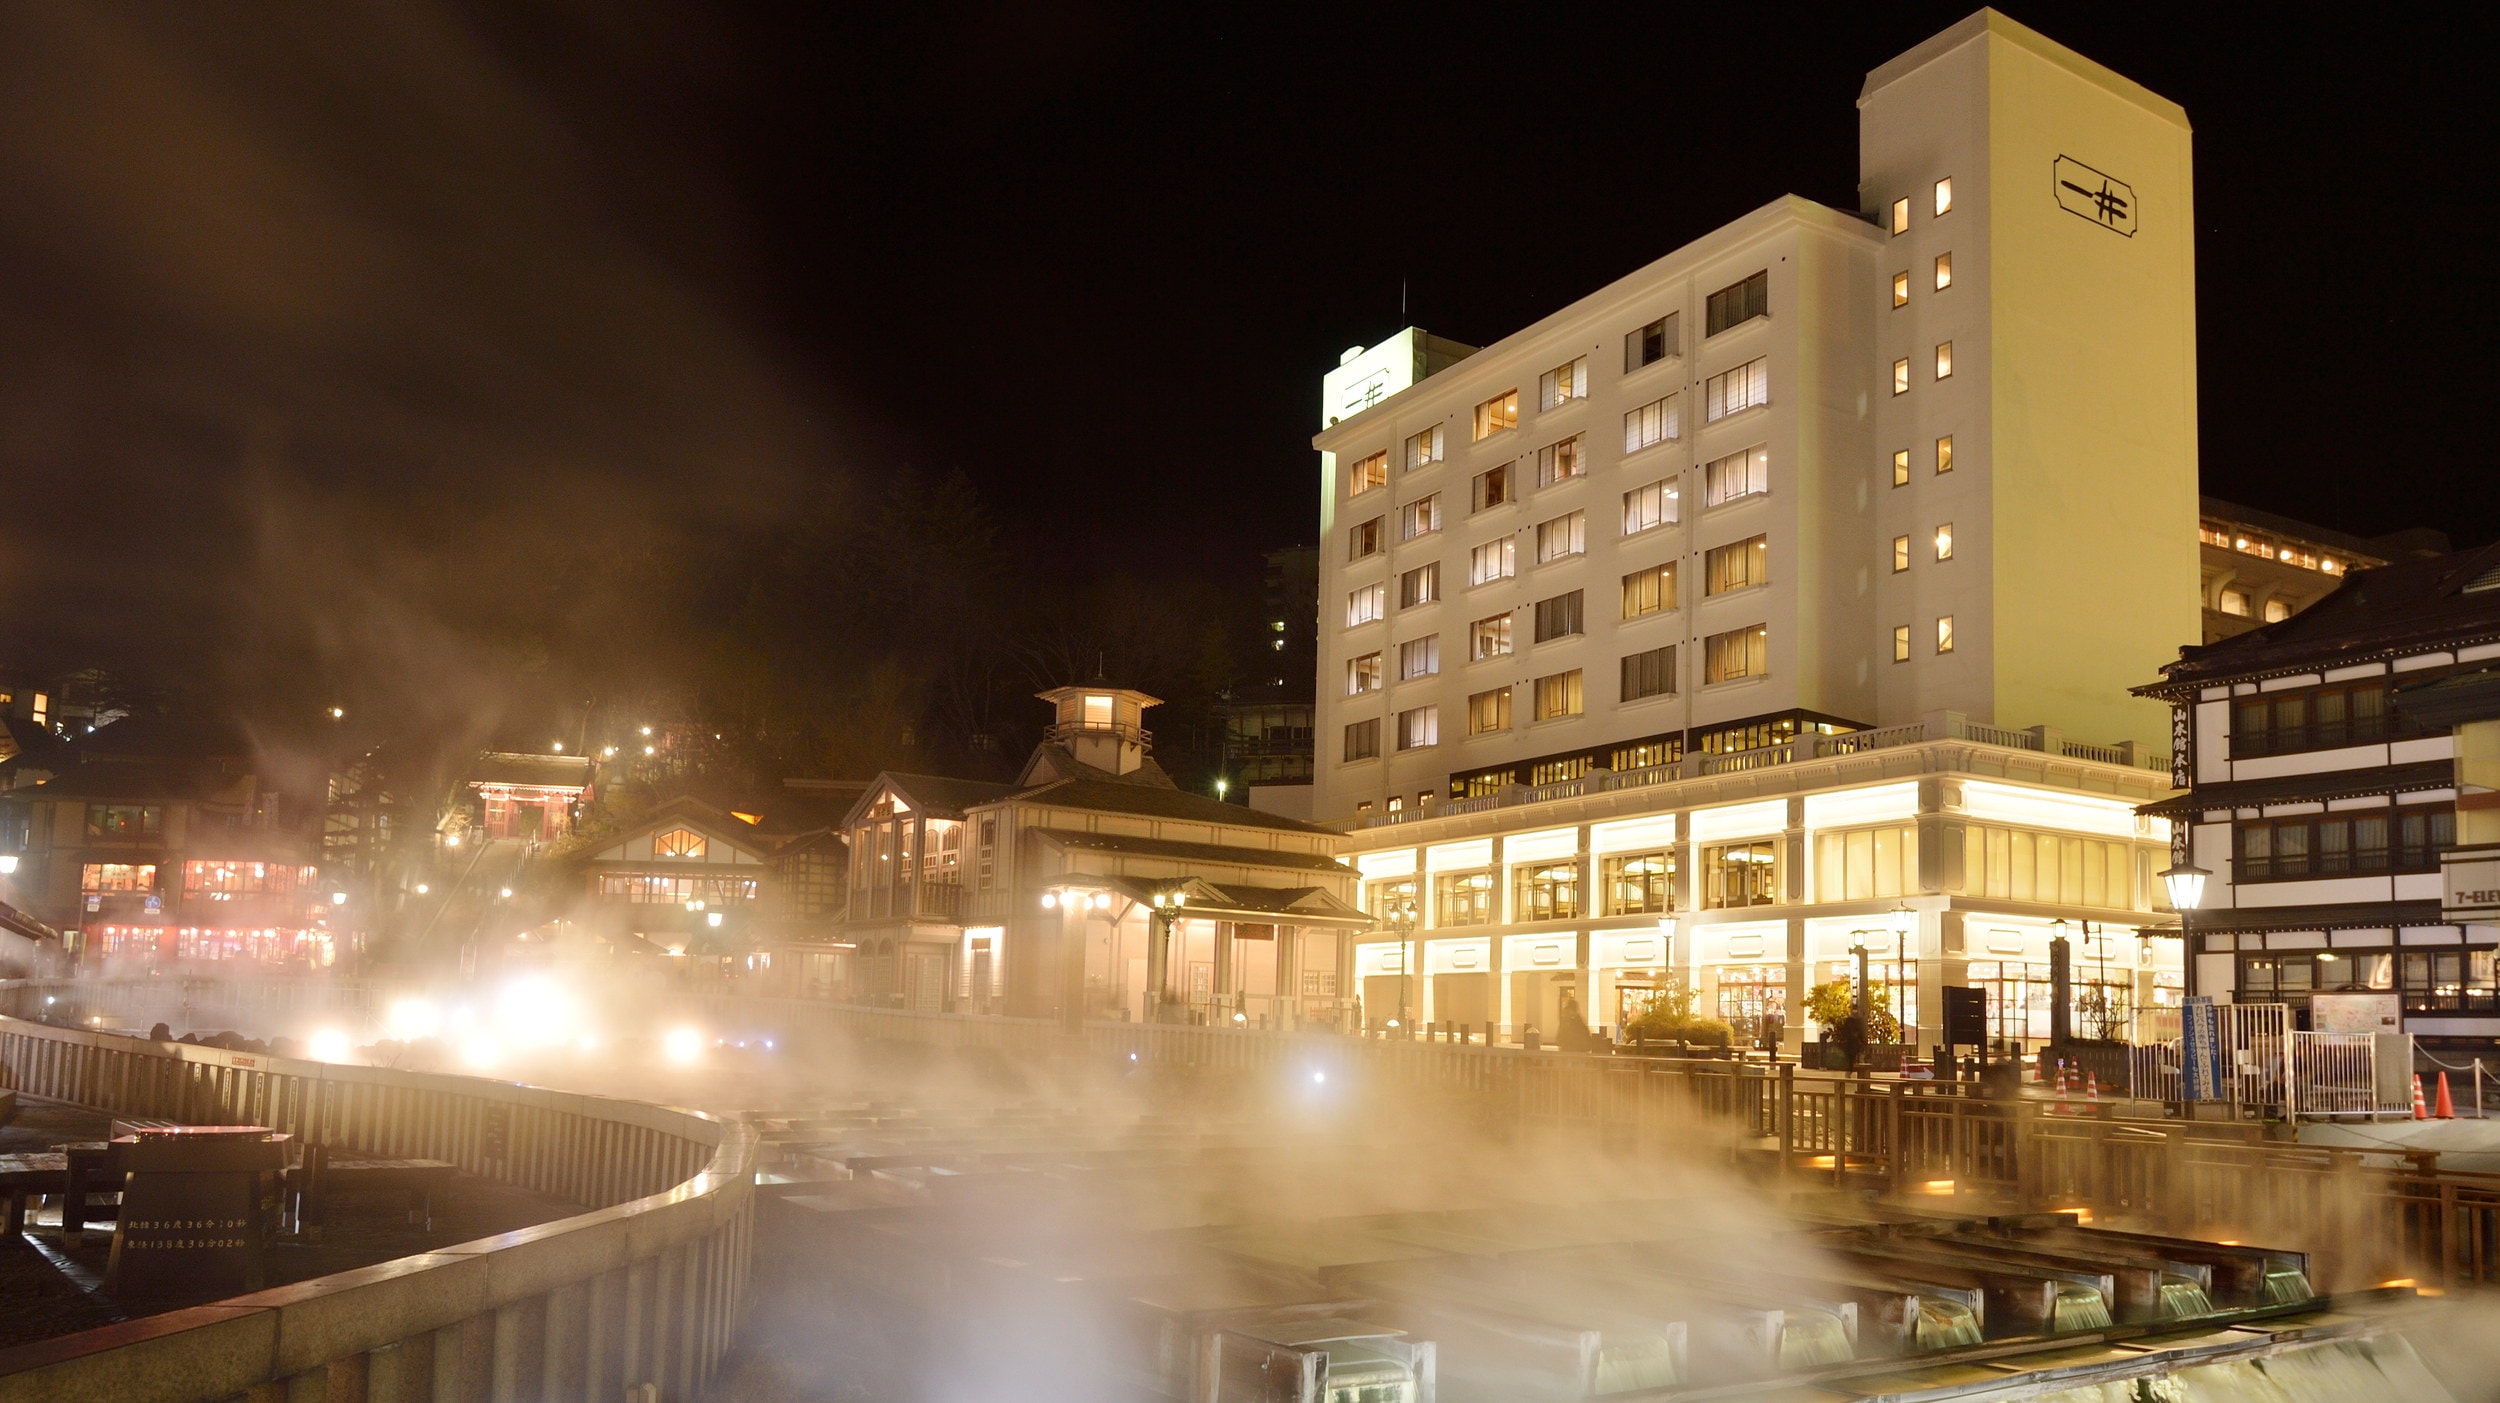 Yubatake Lighting and the exterior of Hotel Ichii